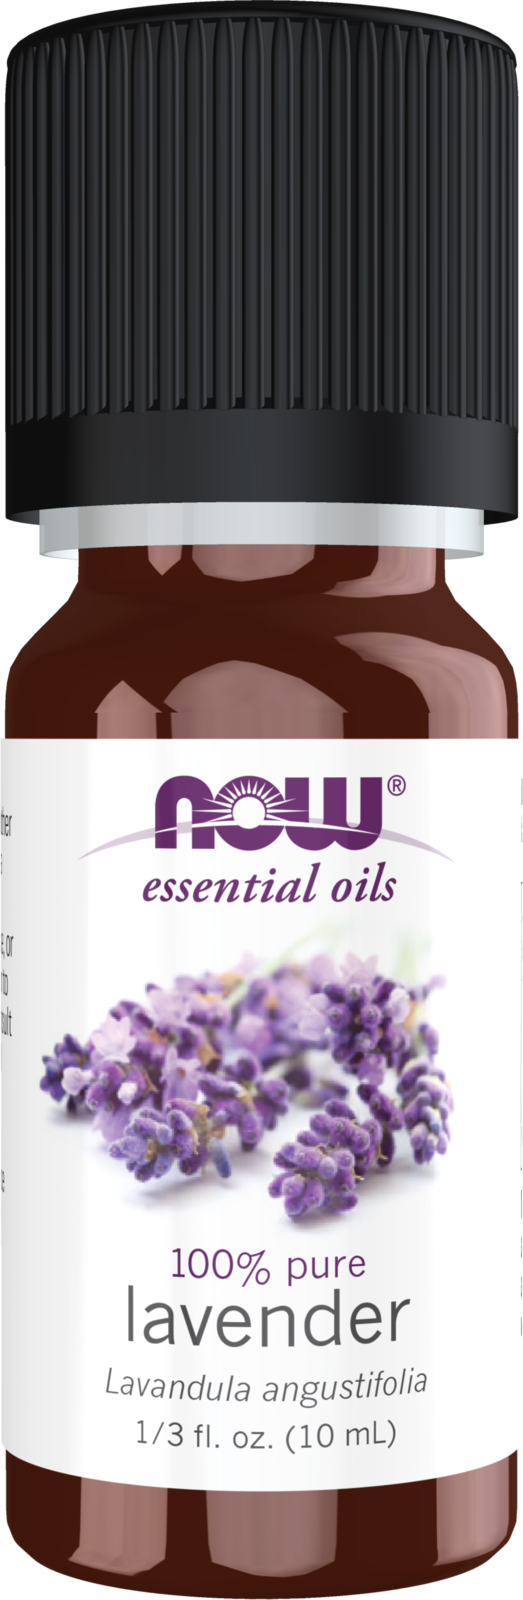 Clove Oil (100% Pure), 4 oz - NOW Foods Essential Oils